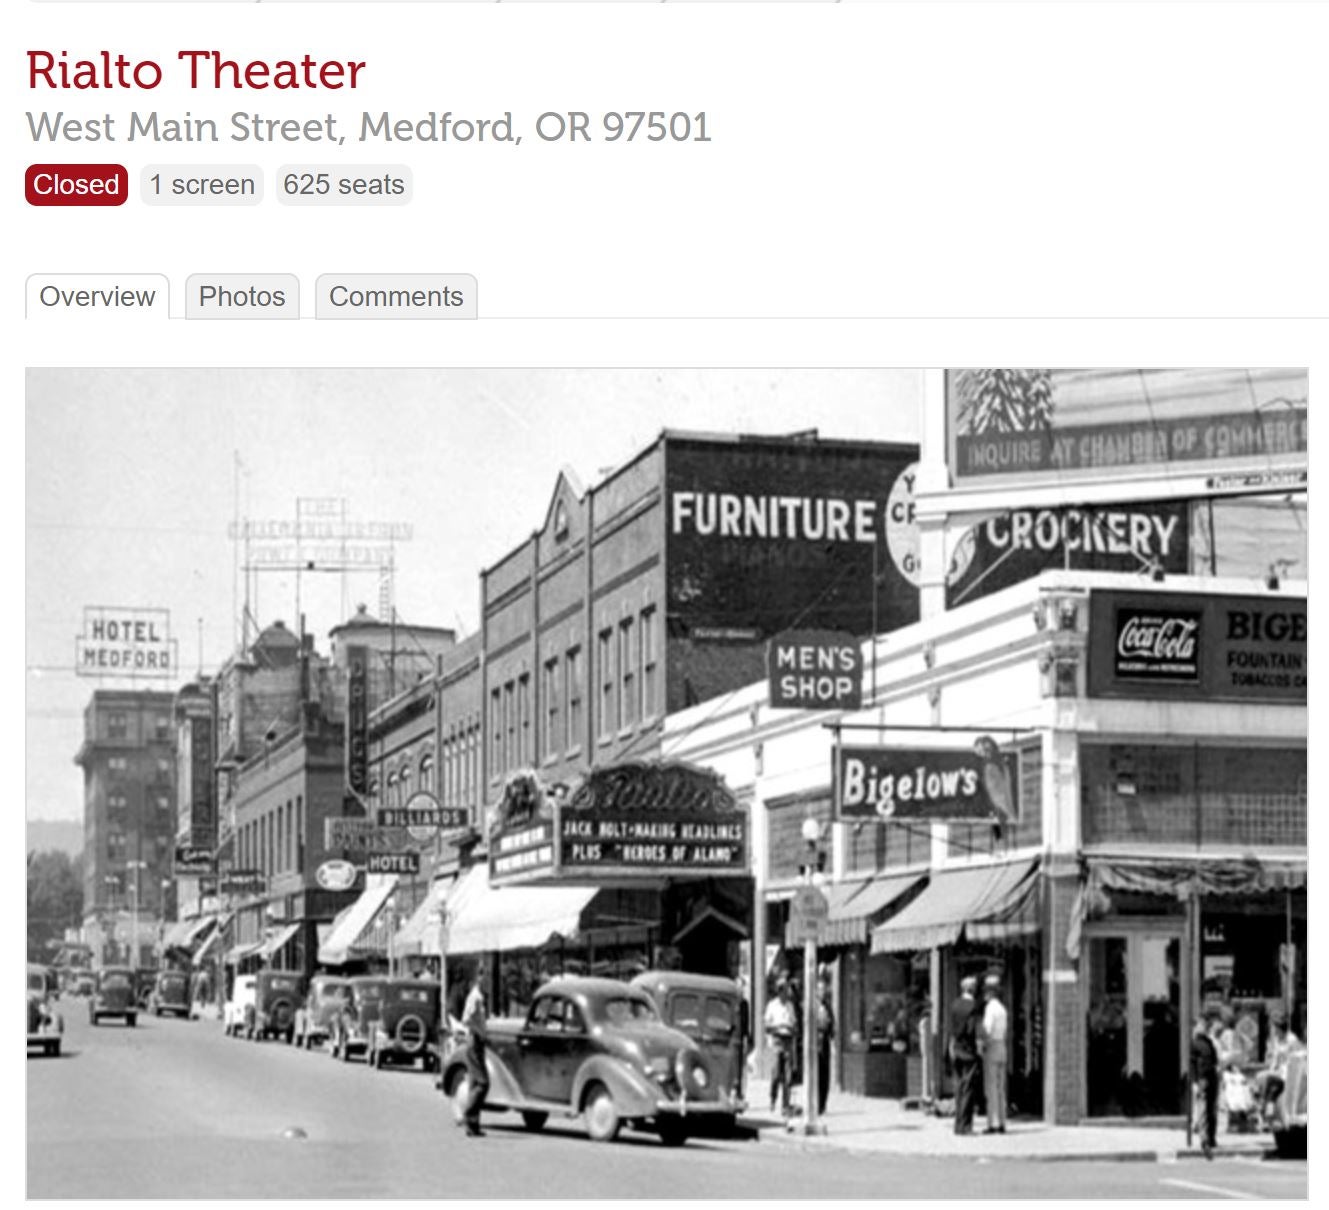 Rialto theater location, Medford, Oregon